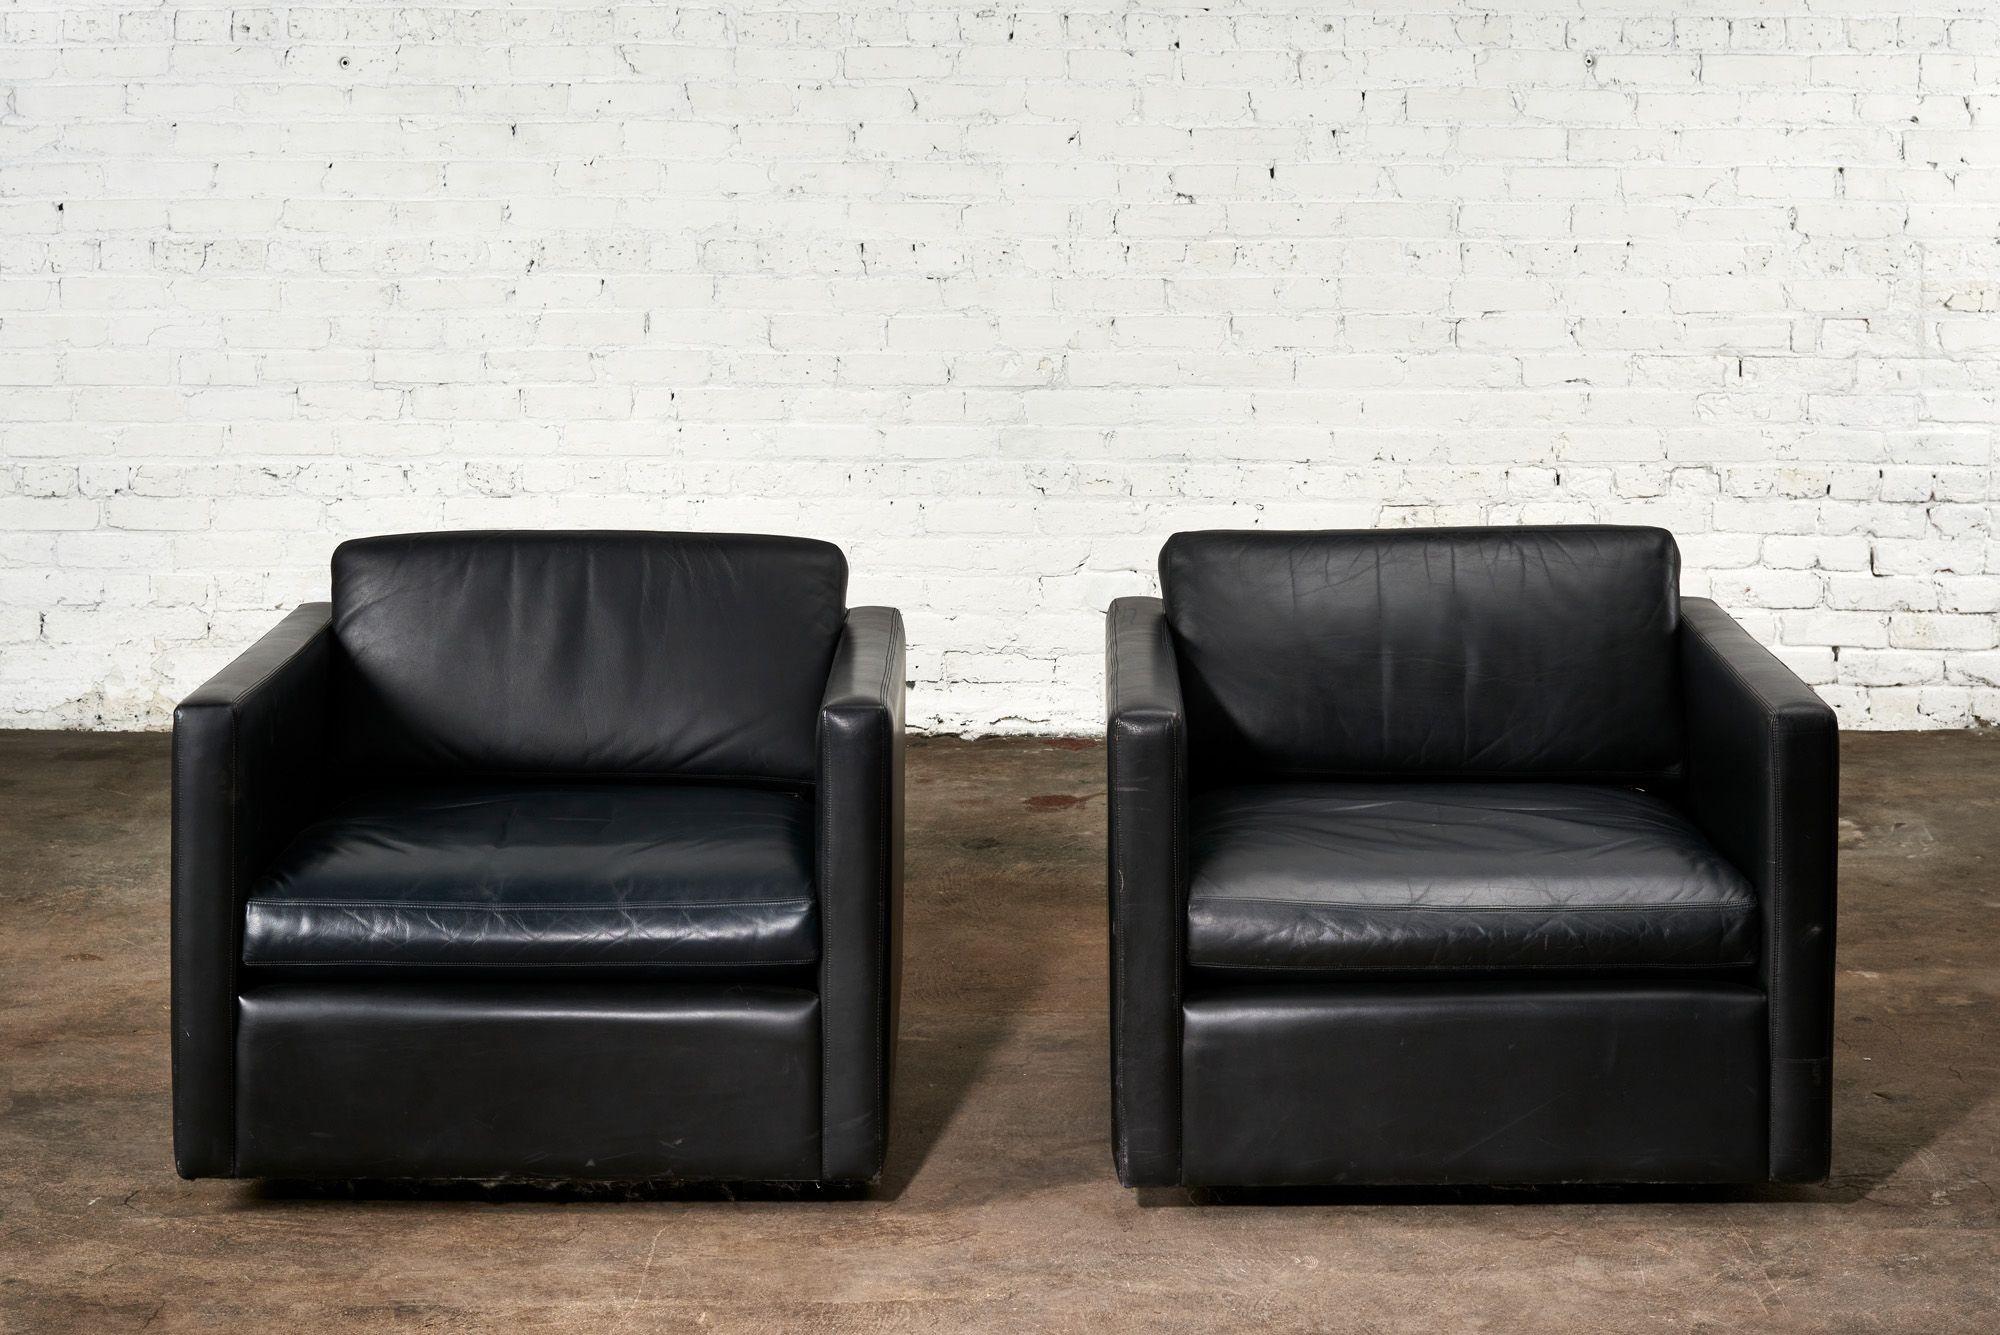 Paar Knoll Pfister Lounge Chair aus schwarzem Leder, 1980. Original schwarzes Leder ist sehr gut erhalten.